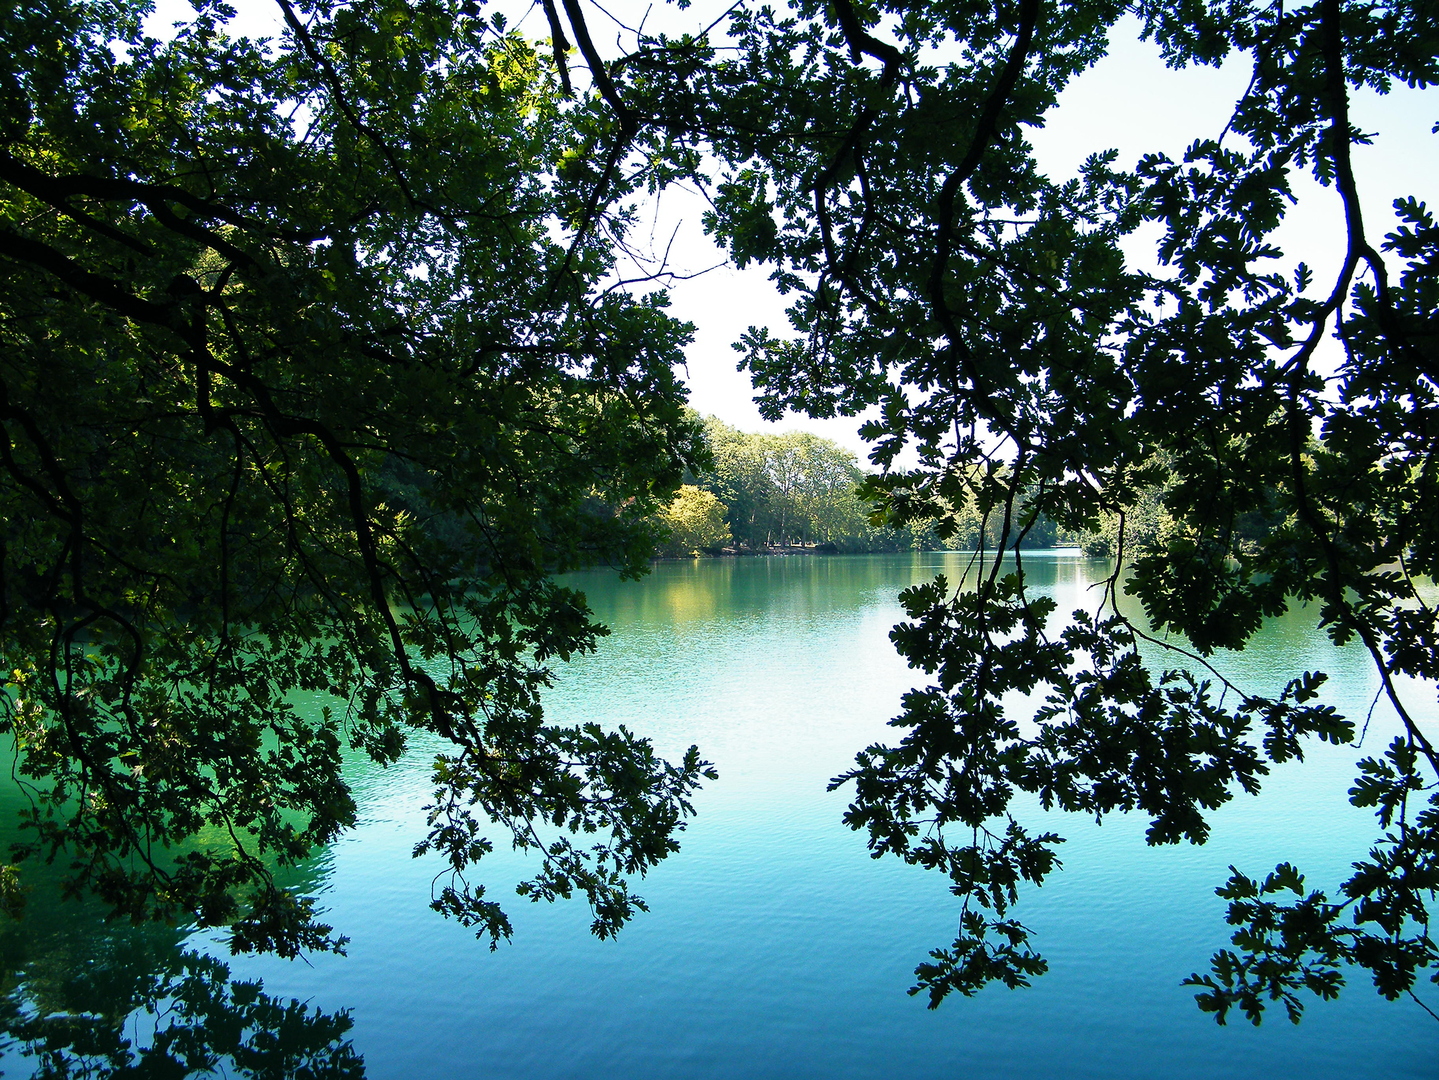 Lac, Parc de la Tête d'Or - DSCF6977.JPG